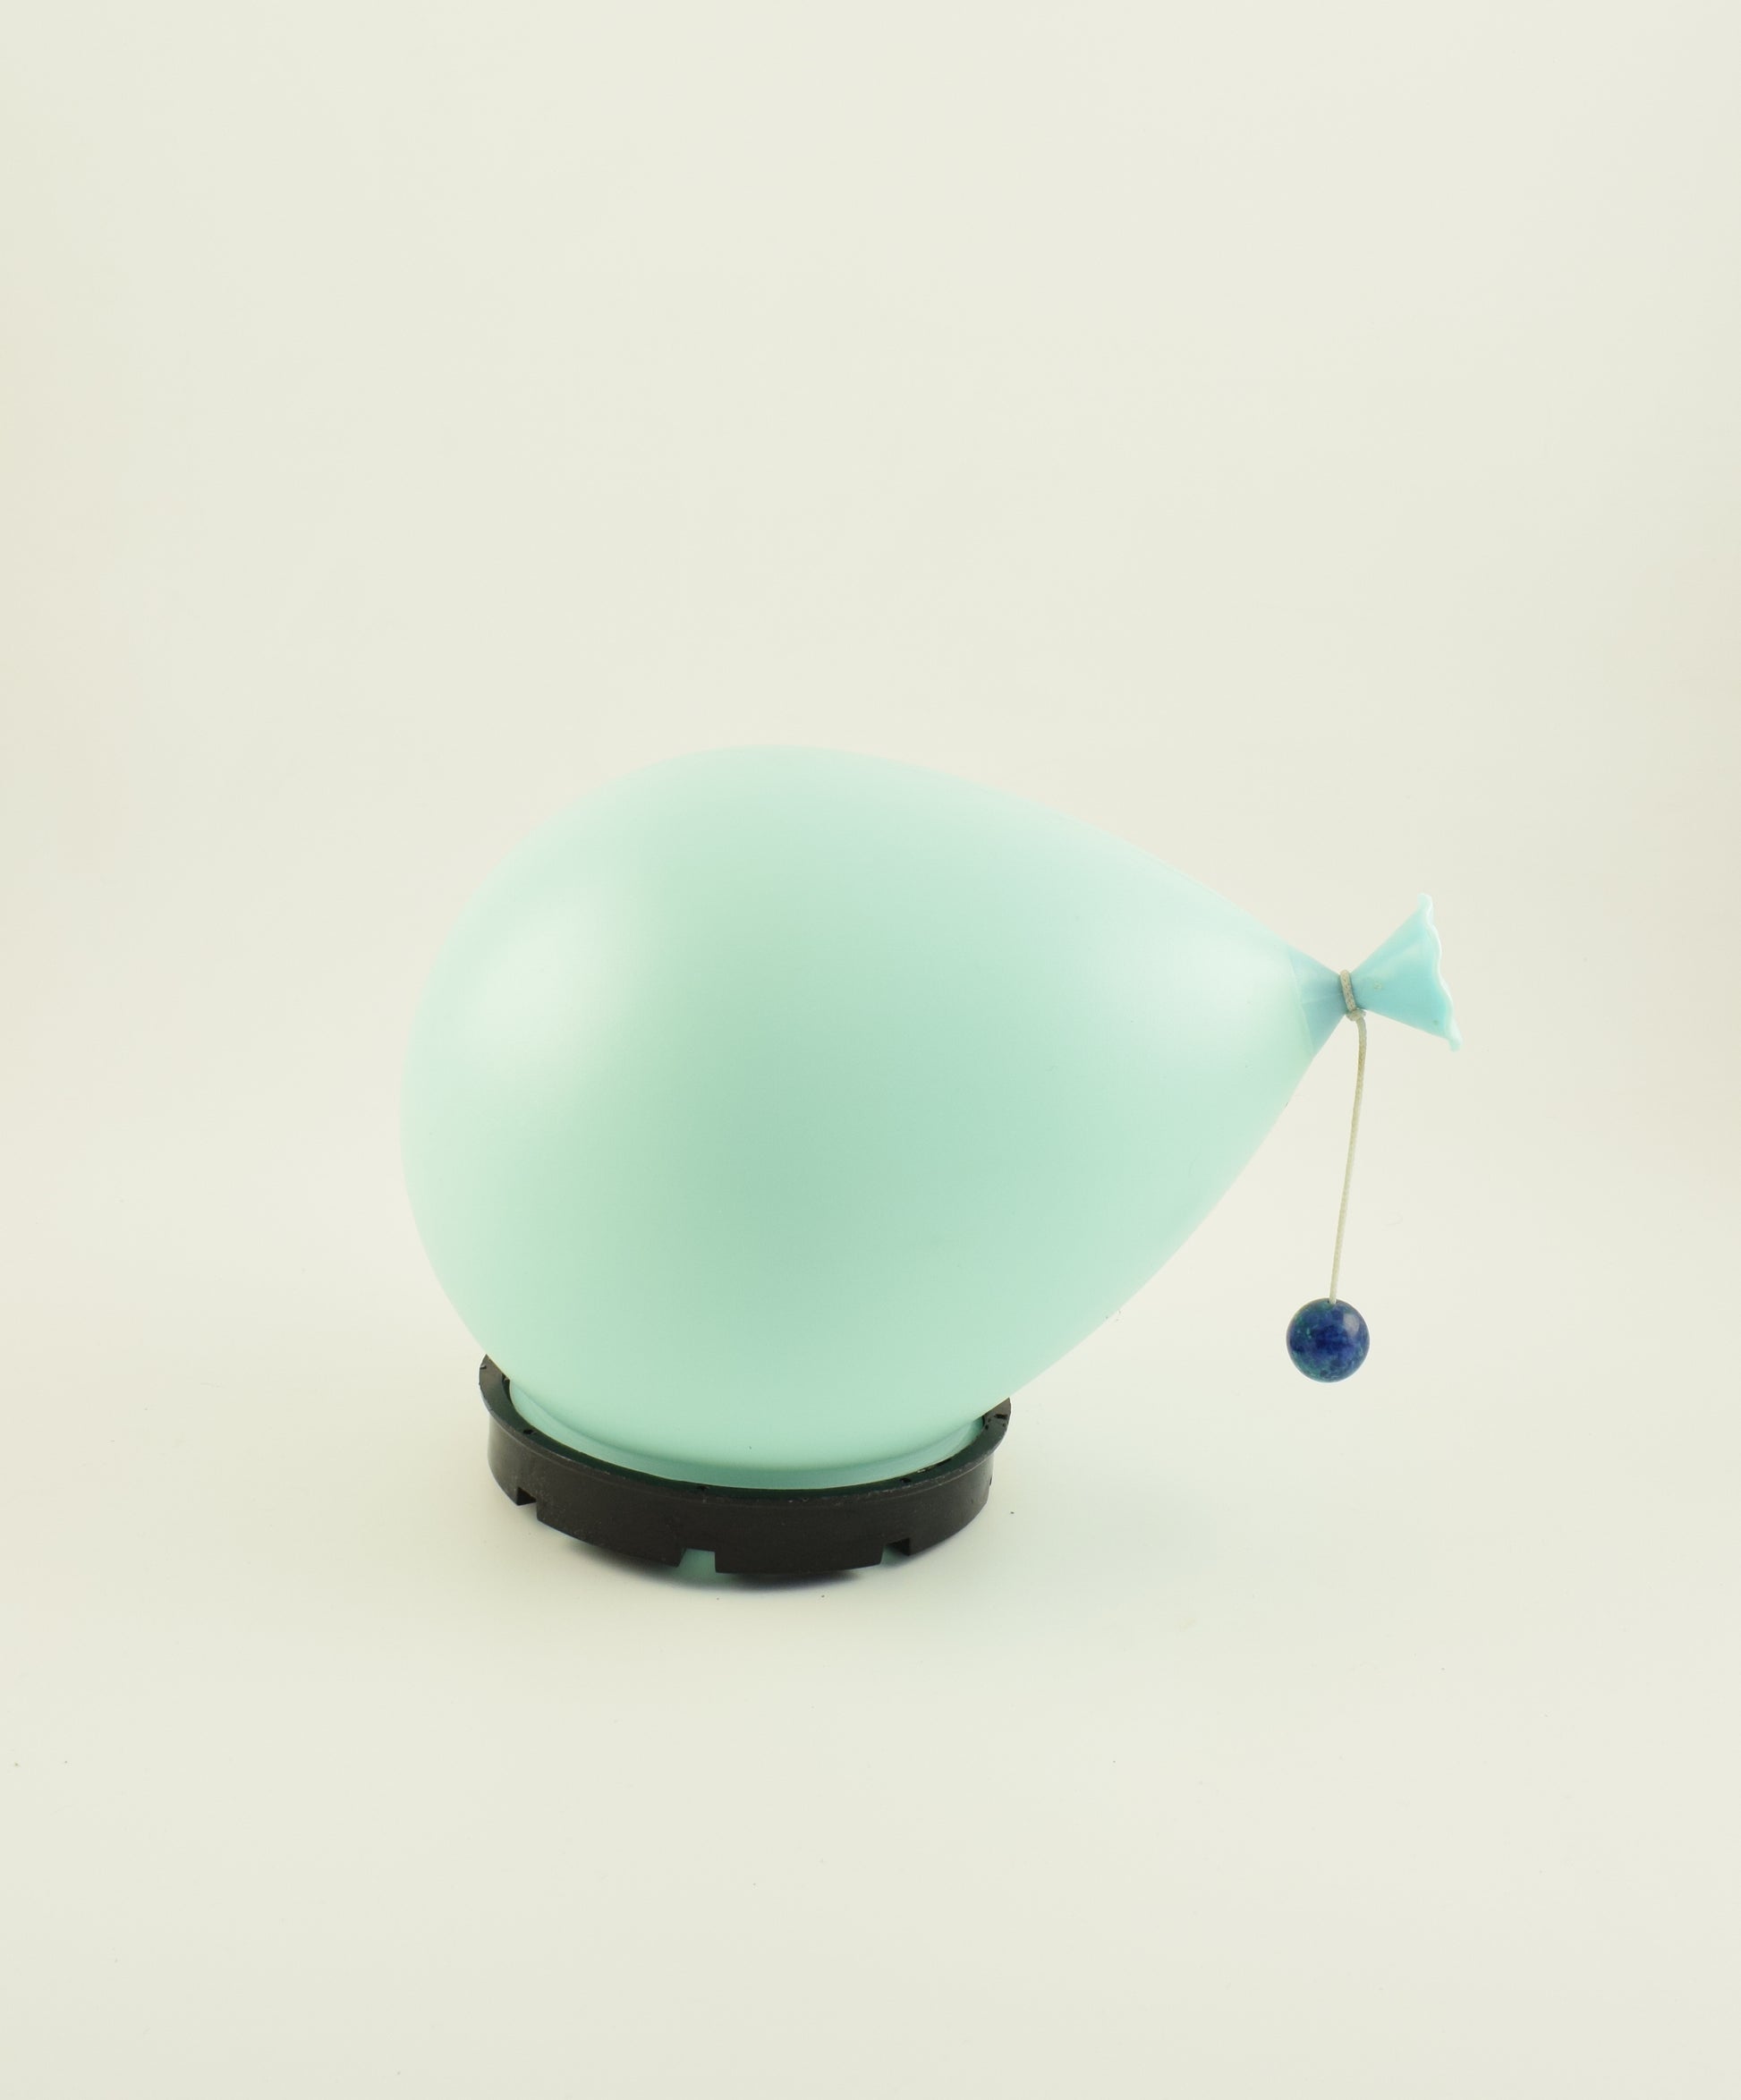 bilumen balloon lamp as a children's present